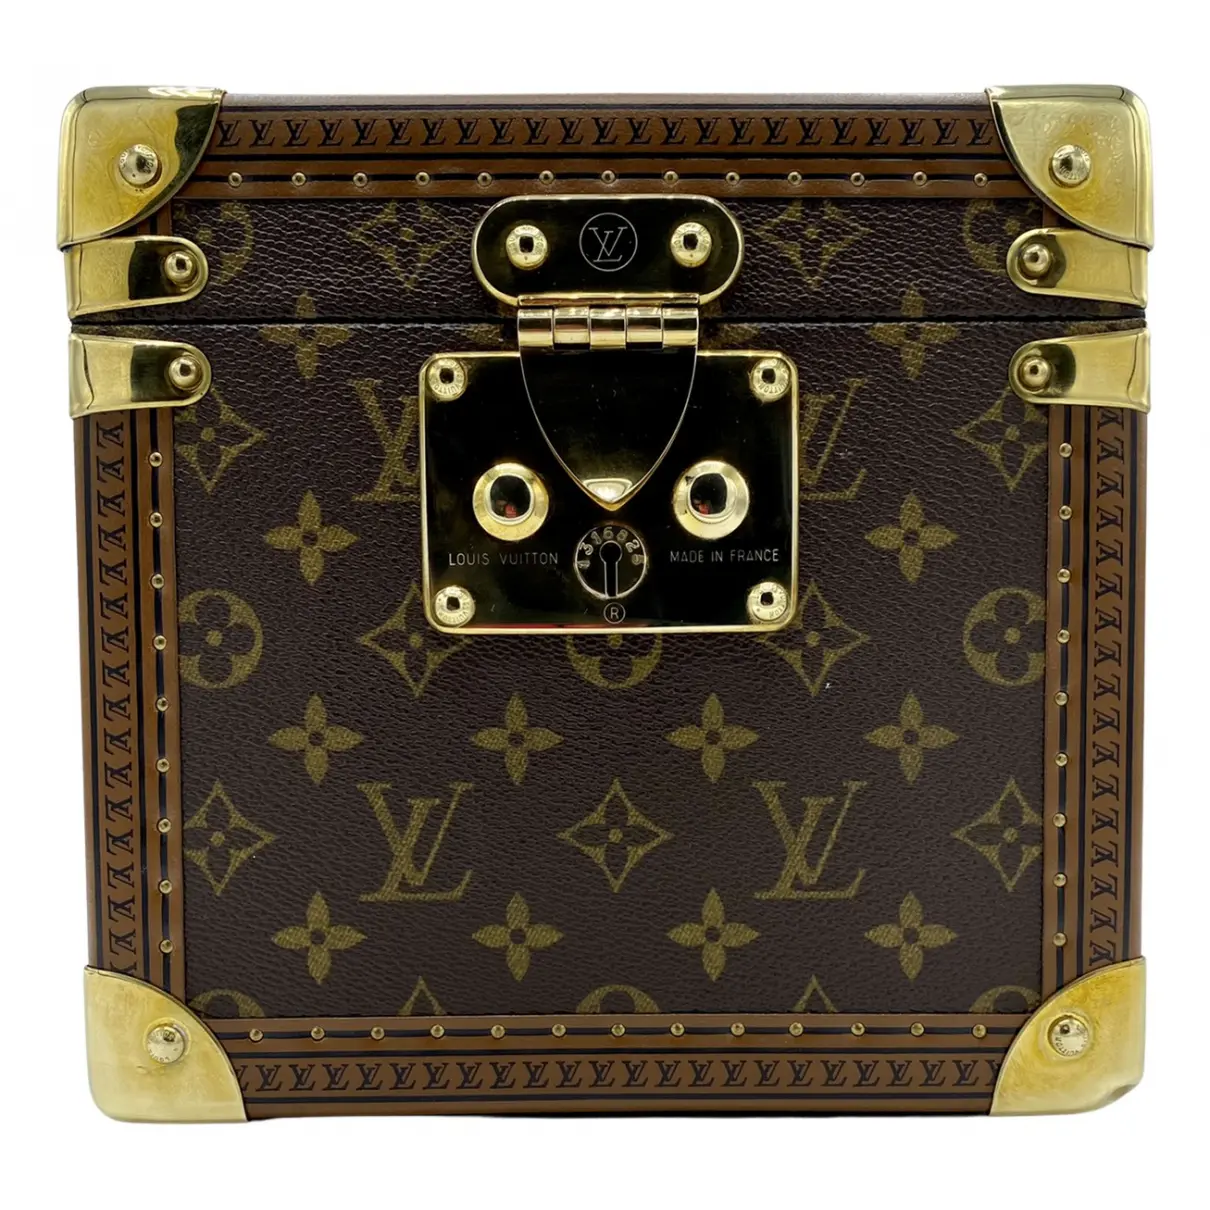 Trousse de Toilette leather vanity case Louis Vuitton